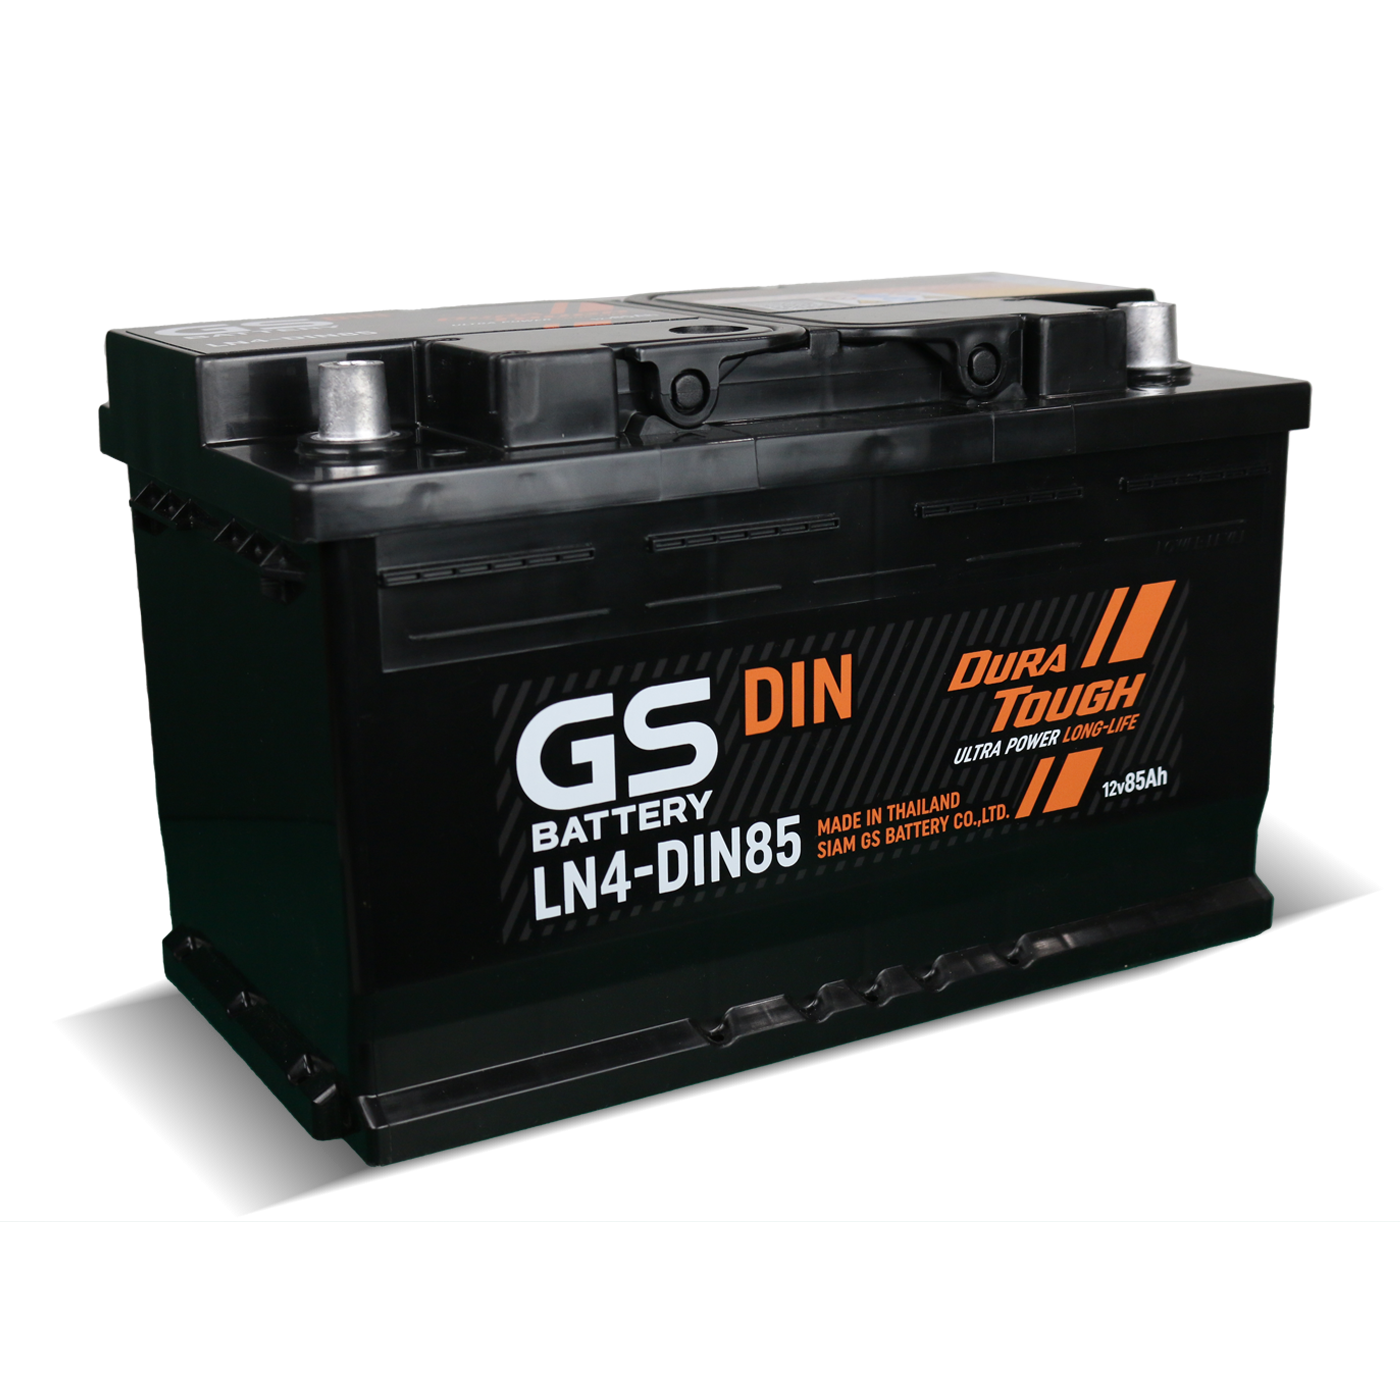 Battery GS LN4-DIN85 (Maintenance Free Type) 12V 85Ah - rungseng